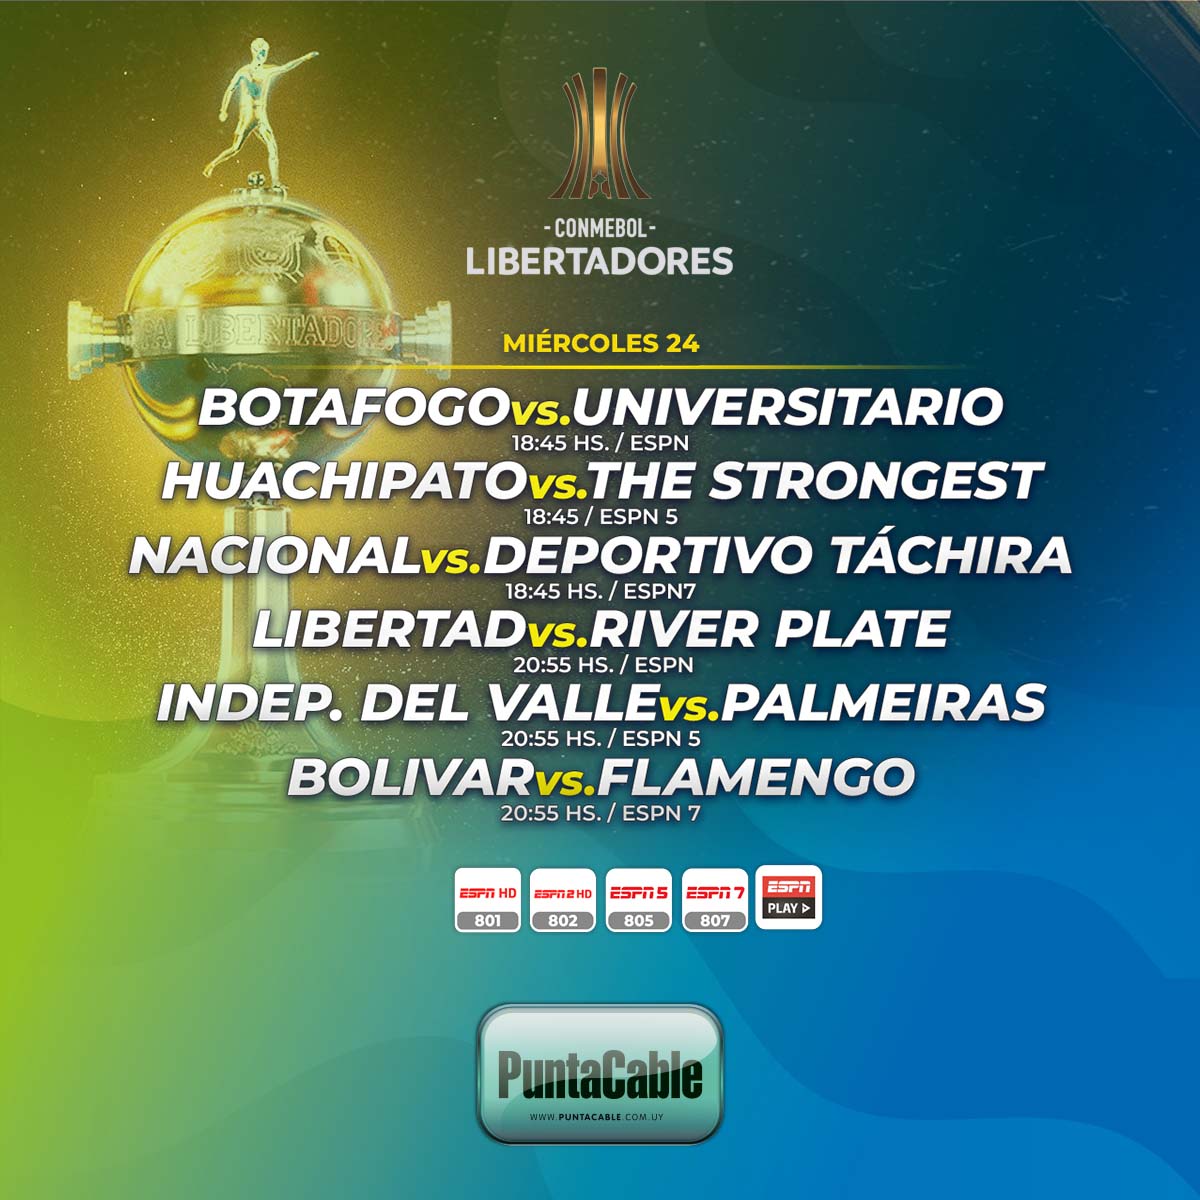 ⚽️¡Hoy miércoles se disputan varios encuentros por CONMEBOL LIBERTADORES!
Lo disfrutamos por #PuntaCable a través de #ESPN, #ESPN2, #ESPN5 e #ESPNPlay